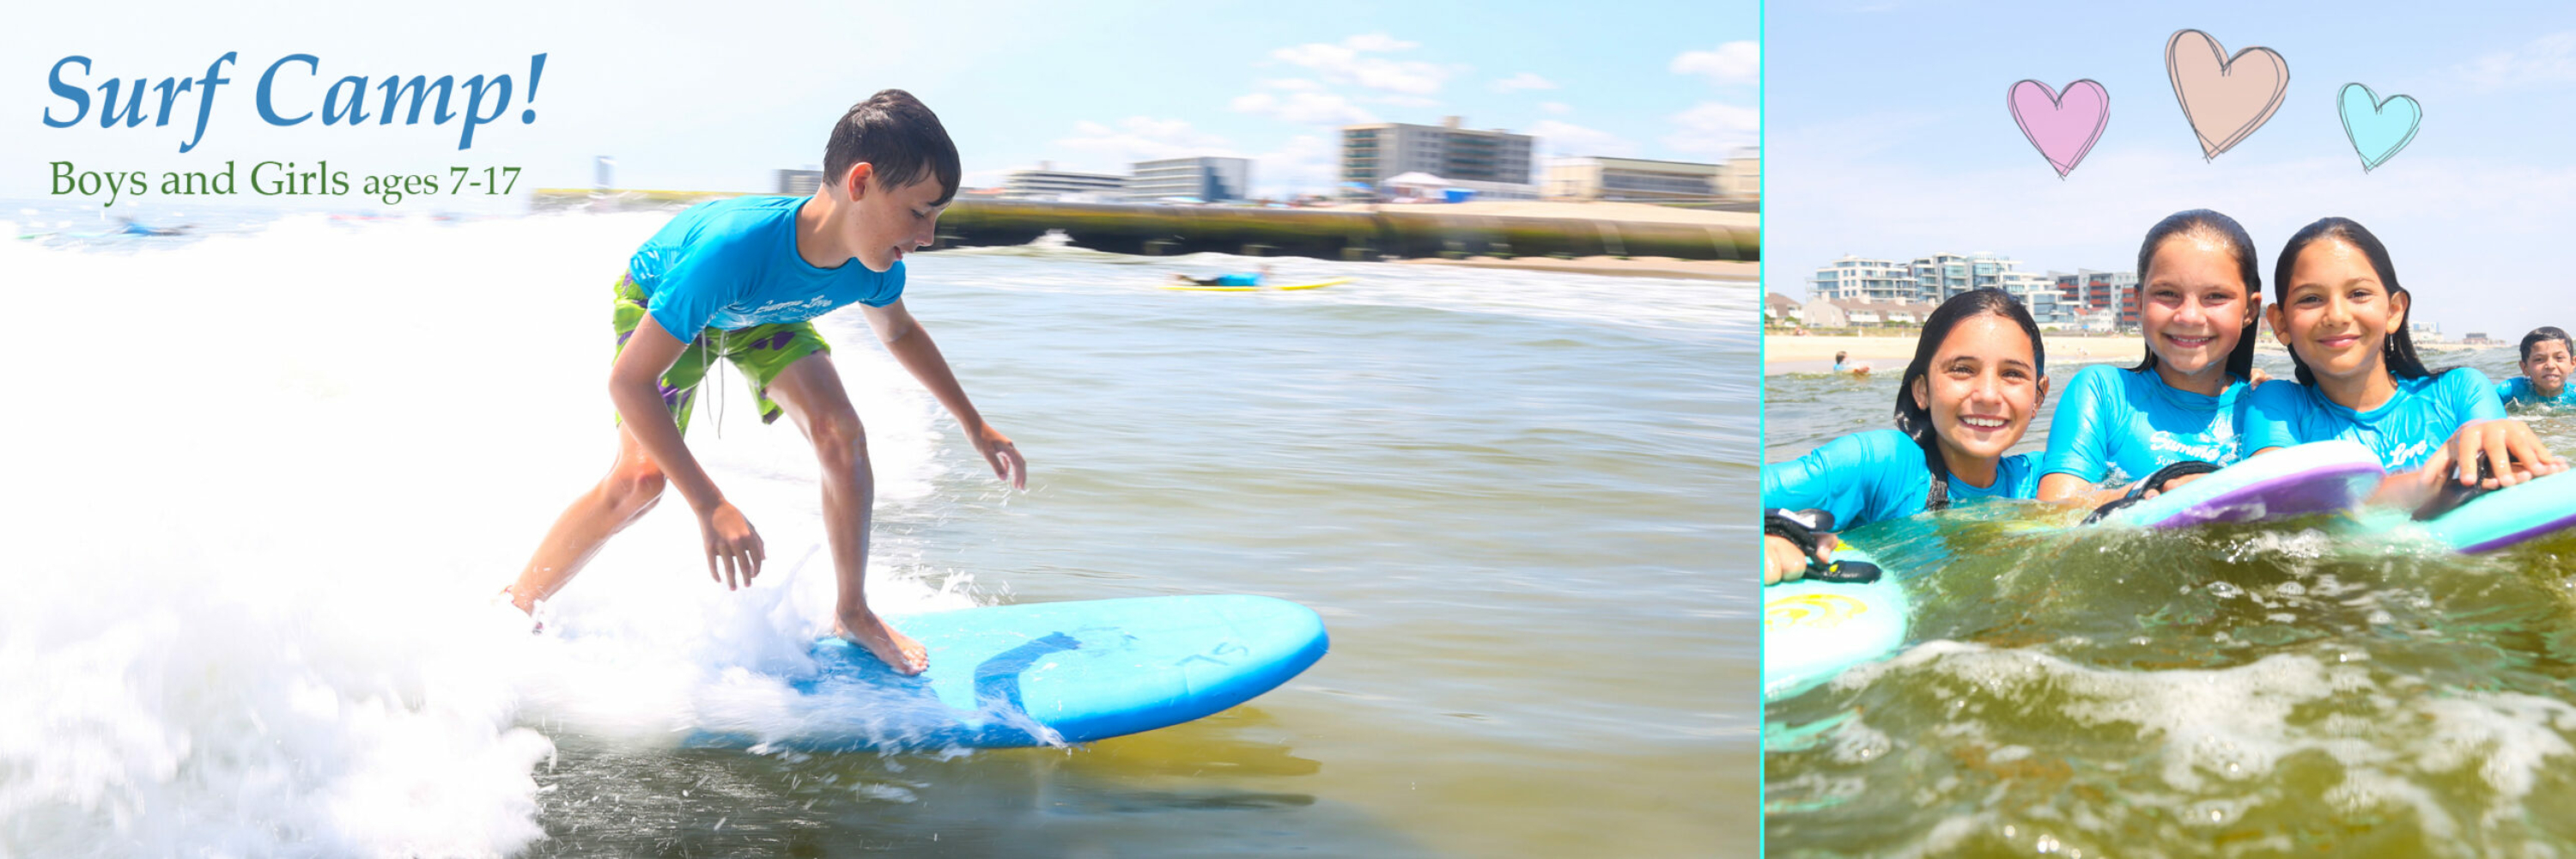 NJ Surf Camp, Surf Lessons, Kids surf camp, Summer camps